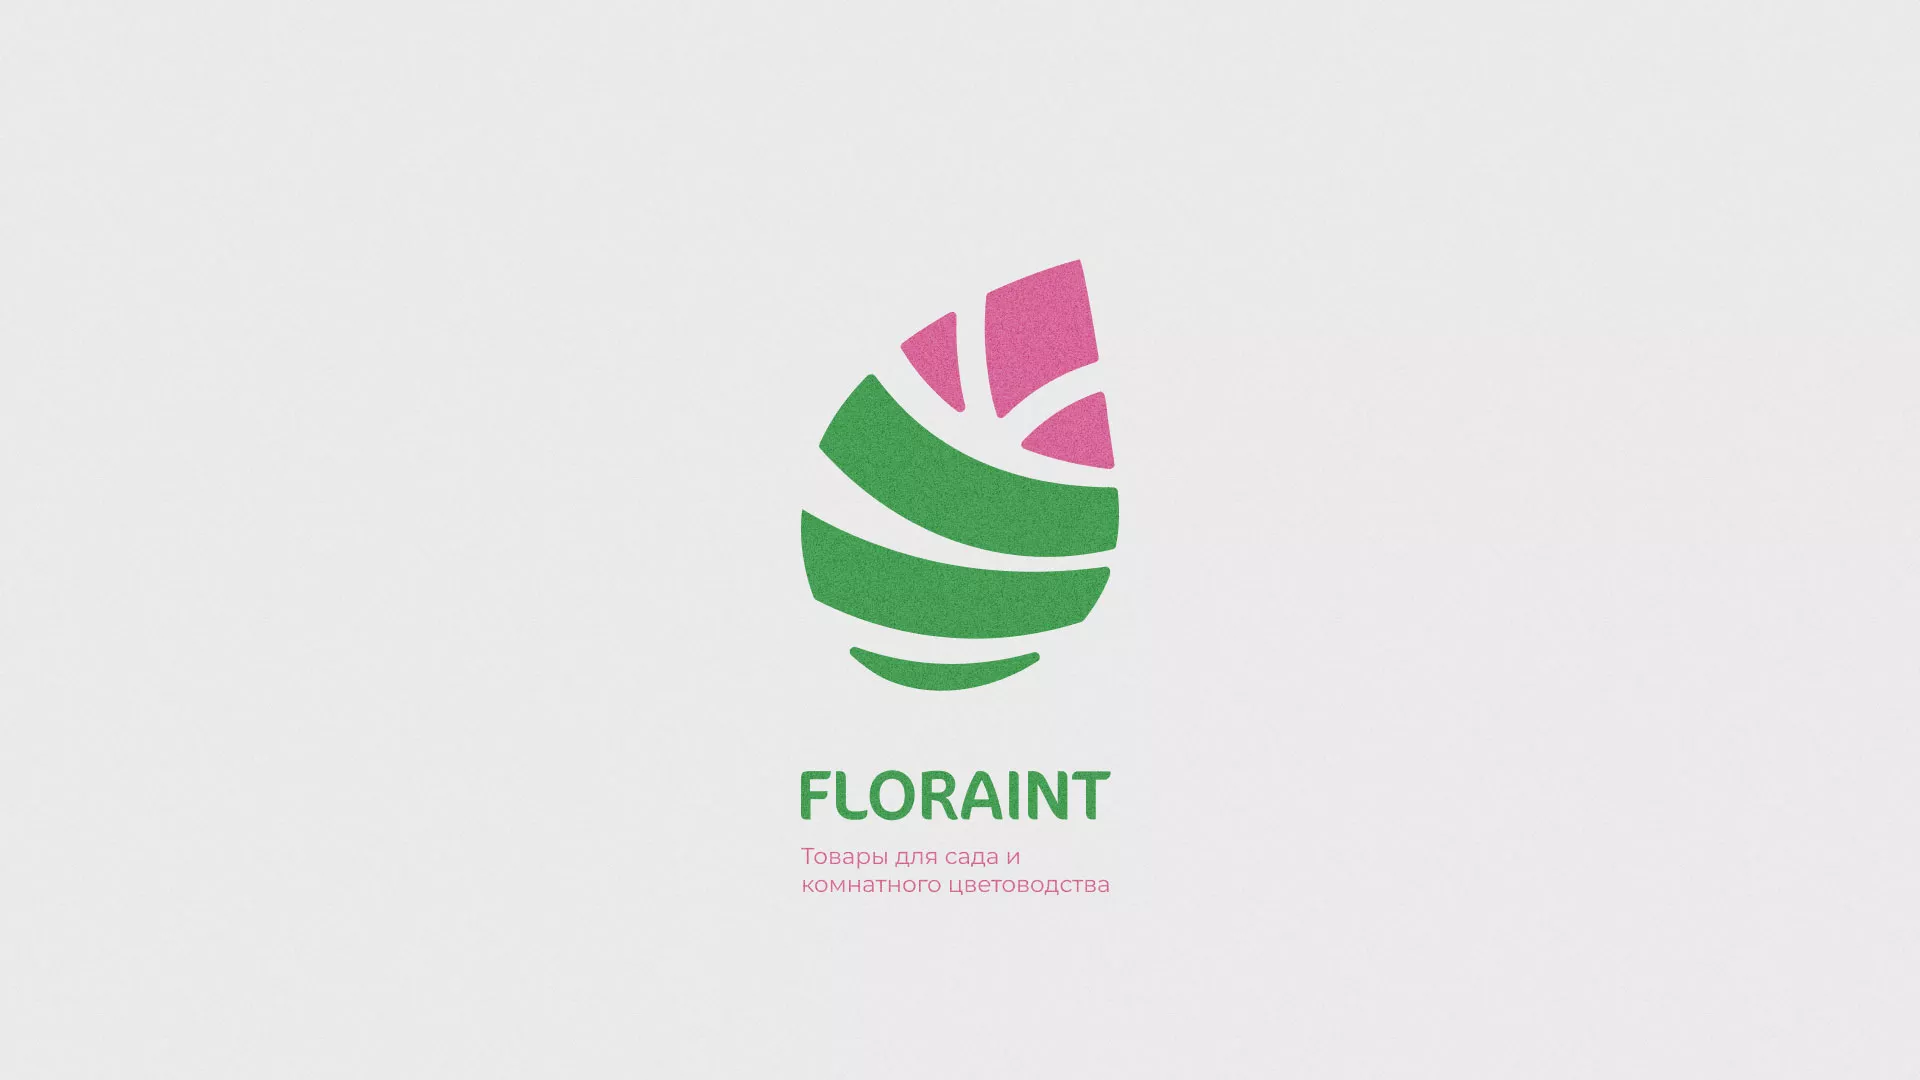 Разработка оформления профиля Instagram для магазина «Floraint» в Александровске-Сахалинском